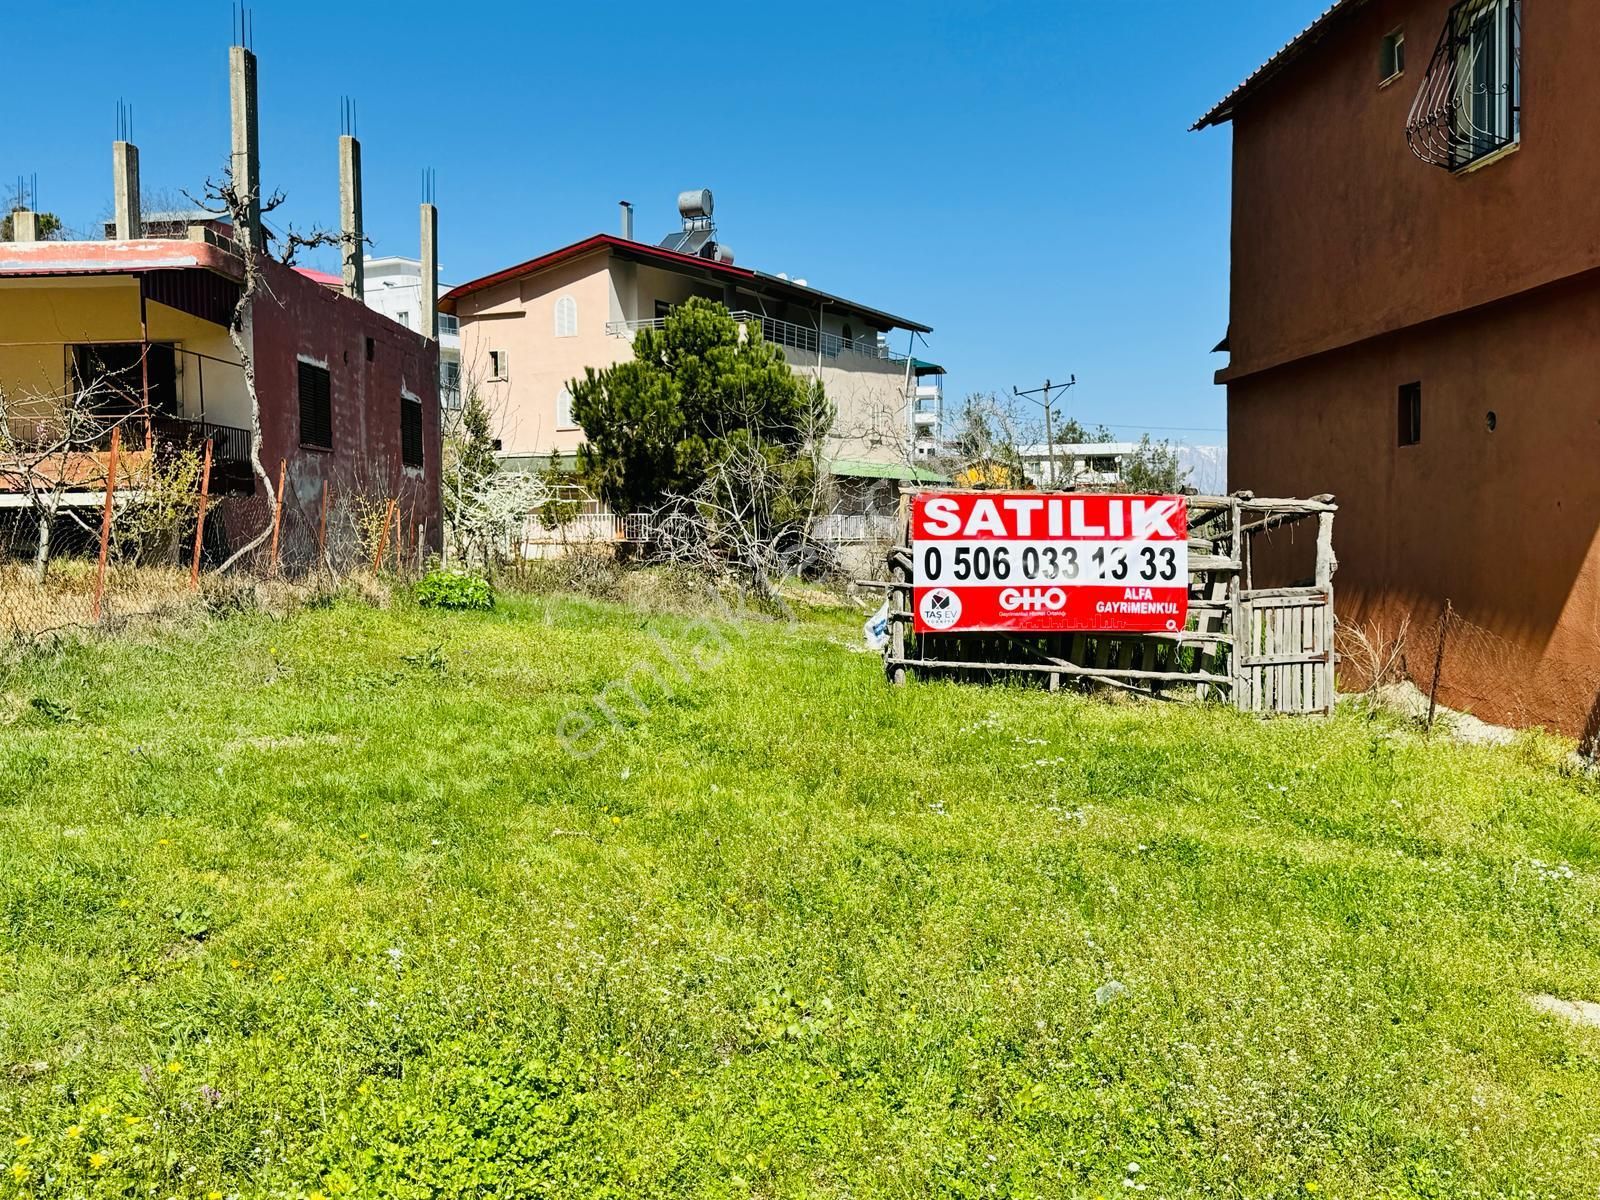 Toroslar Çandır Satılık Villa İmarlı  GHO ALFA'DAN ÇANDIR KÖYÜ'NDE 370 M2 SATILIK ARSA